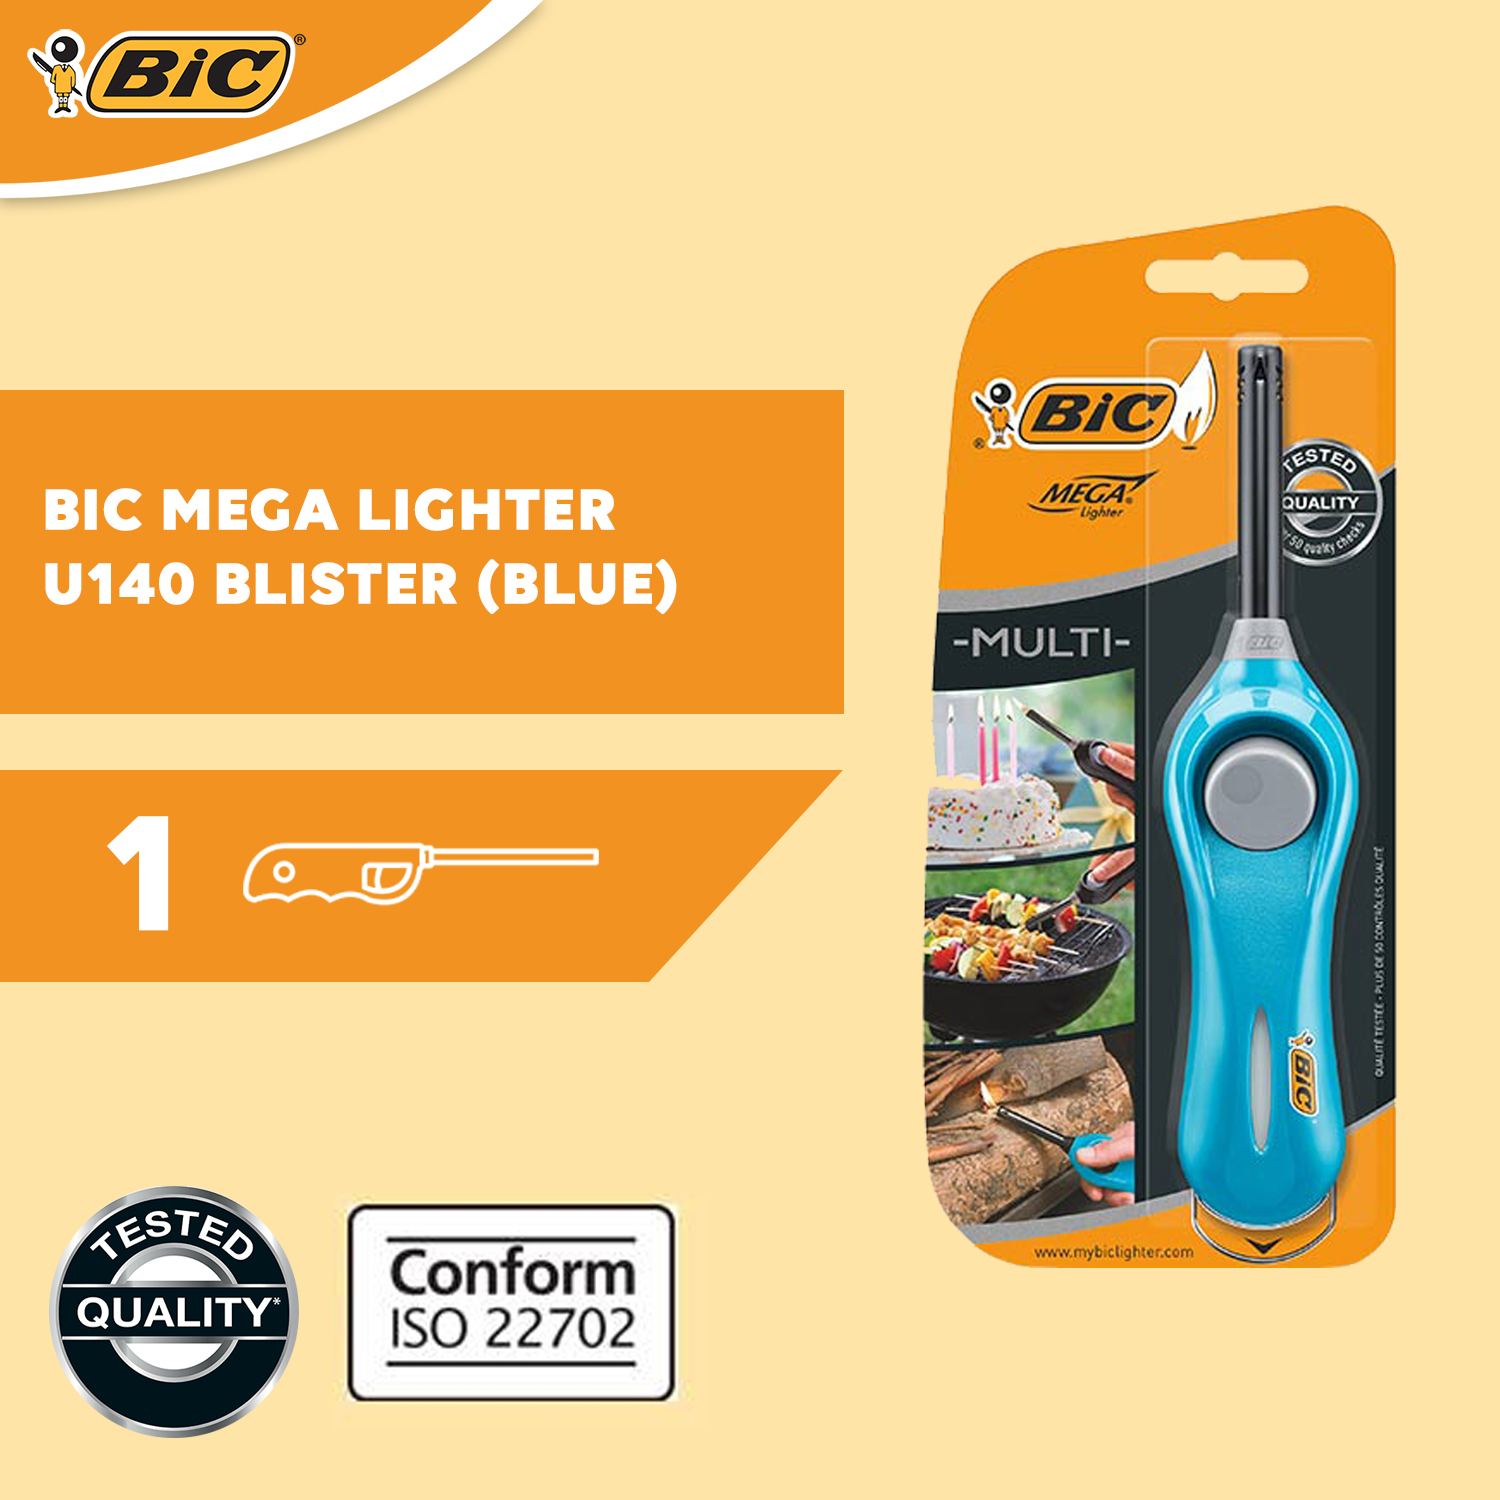 Bic Mega Lighter U140 Blister Unboxing 